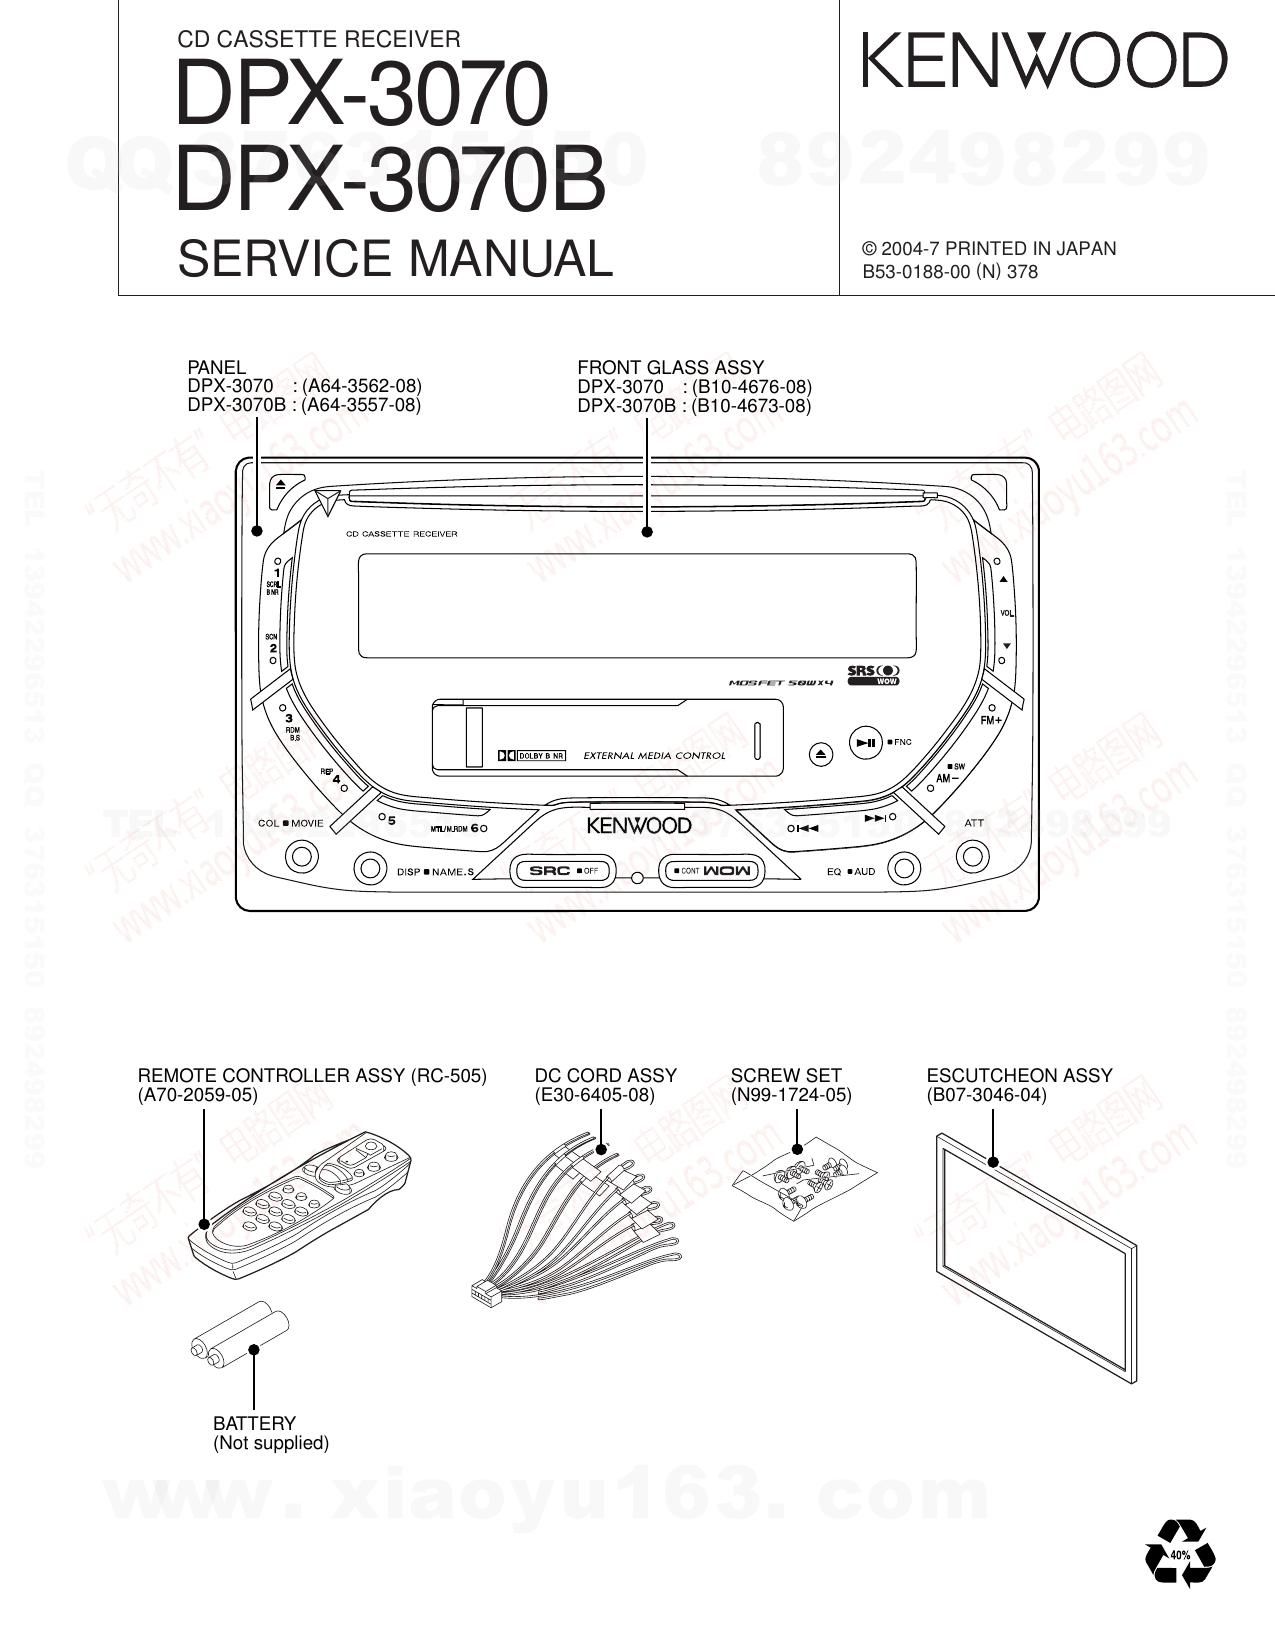 Kenwood DPX 3070 B Service Manual